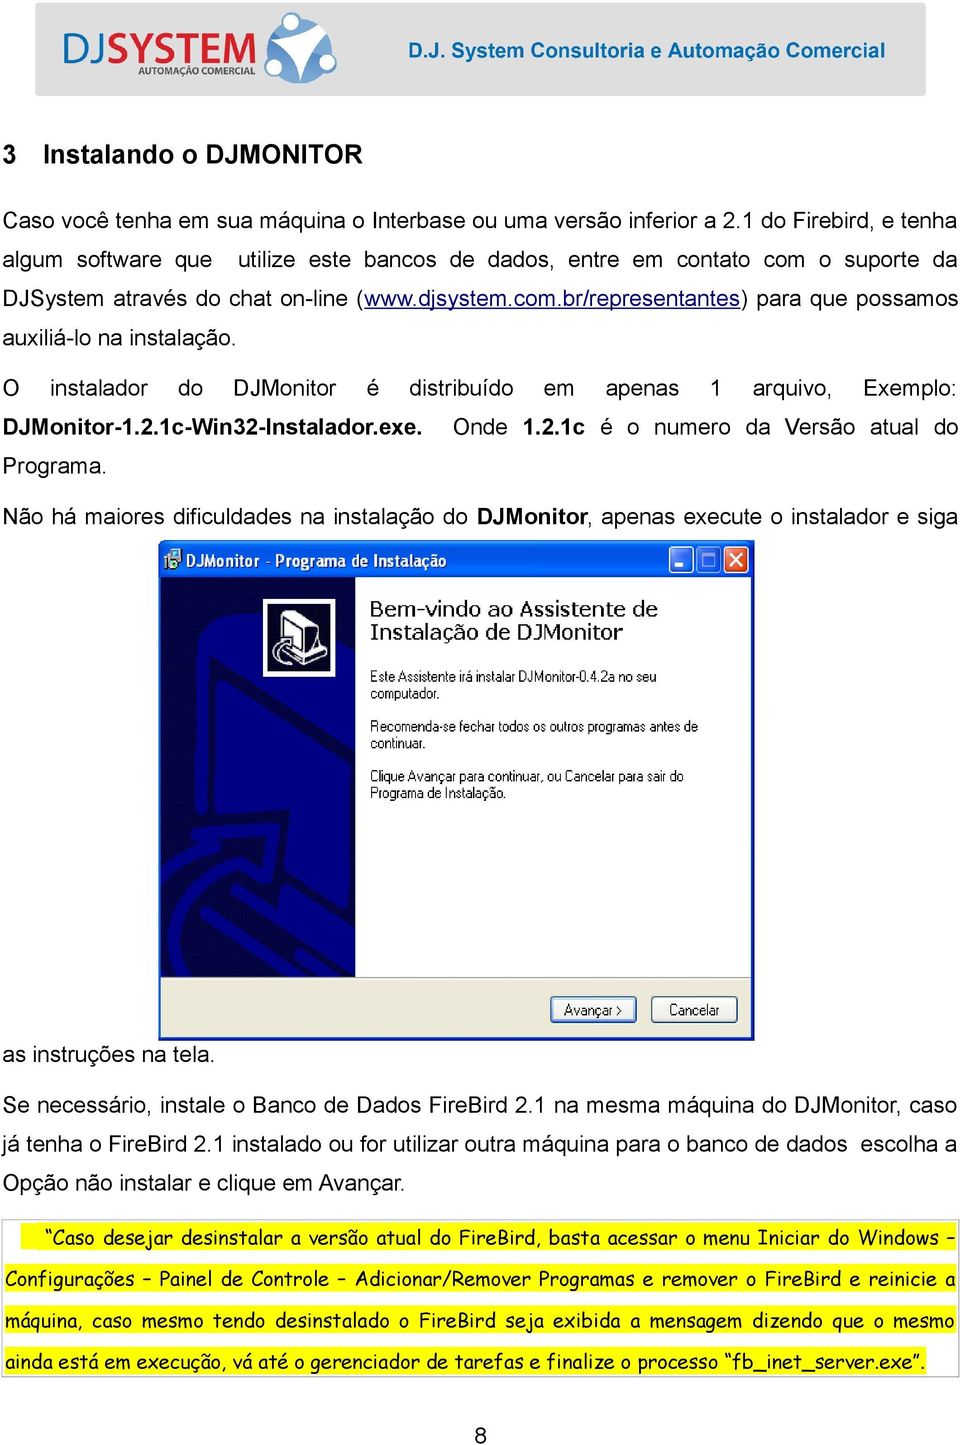 O instalador do DJMonitor é distribuído DJMonitor-1.2.1c-Win32-Instalador.exe. em apenas 1 arquivo, Exemplo: Onde 1.2.1c é o numero da Versão atual do Programa.